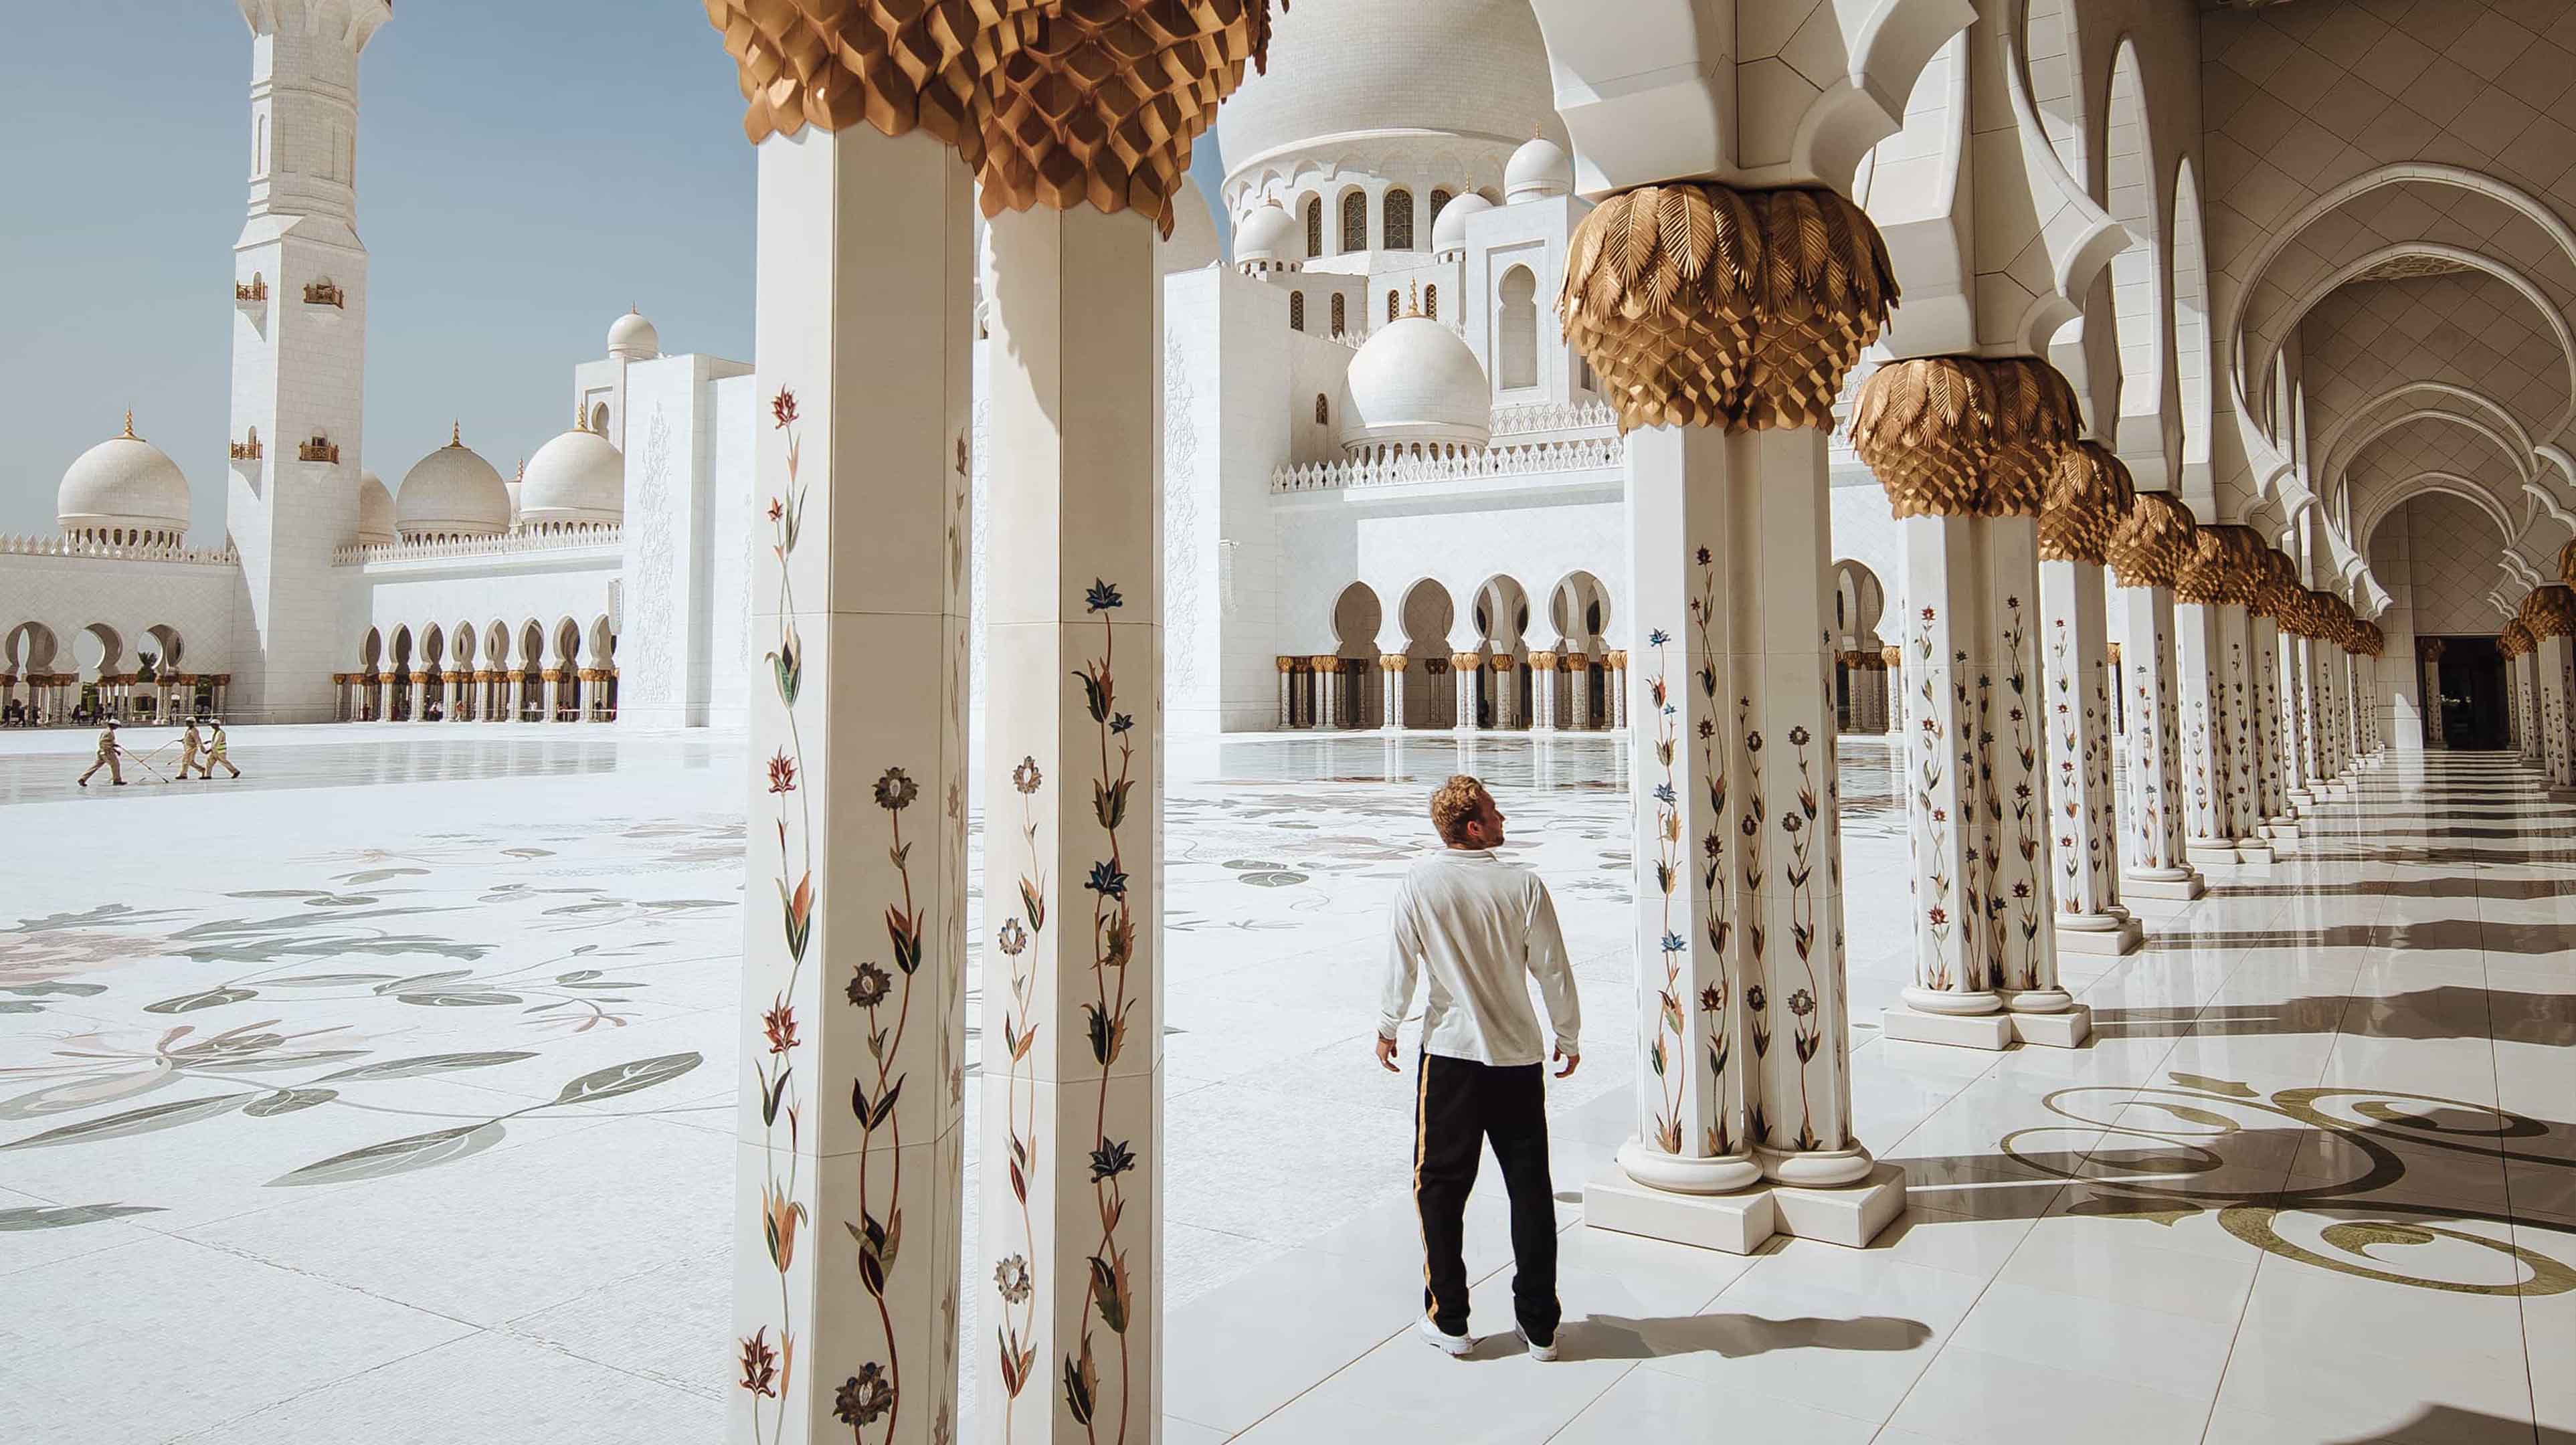 המסגד הגדול שייך זאייד (Sheikh Zayed Grand Mosque)